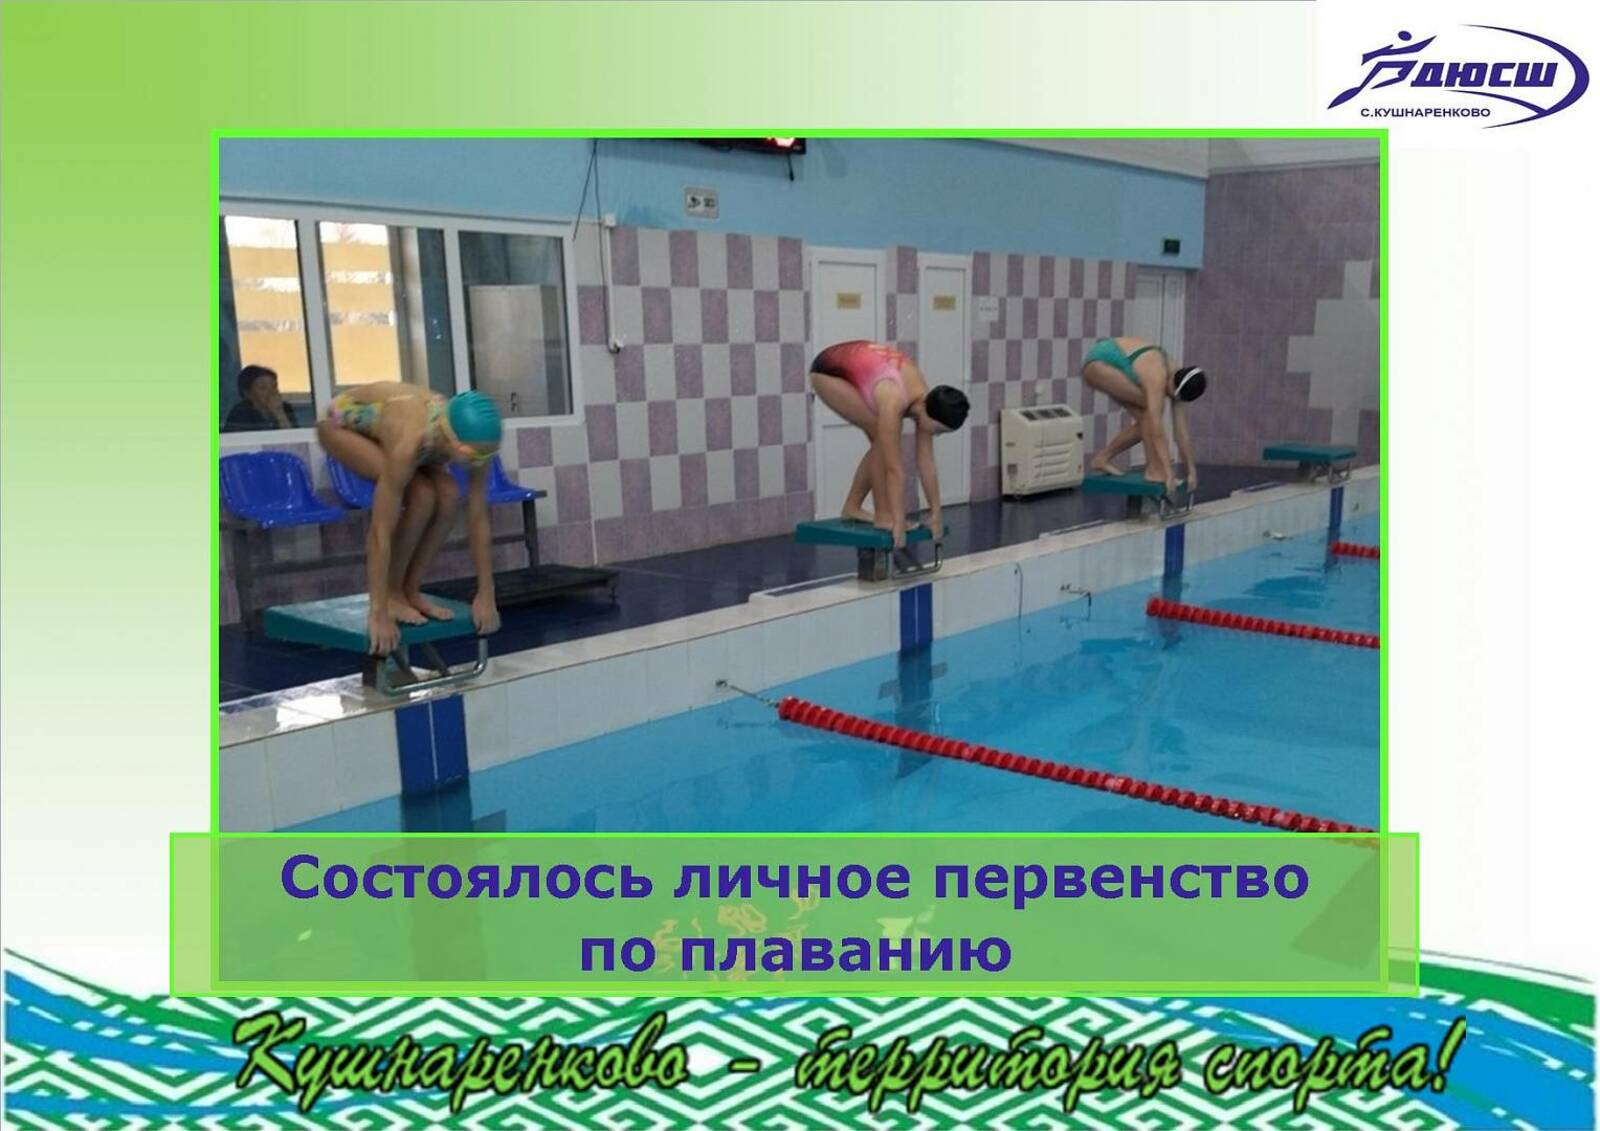 В селе Кушнаренково состоялось личное первенство по плаванию